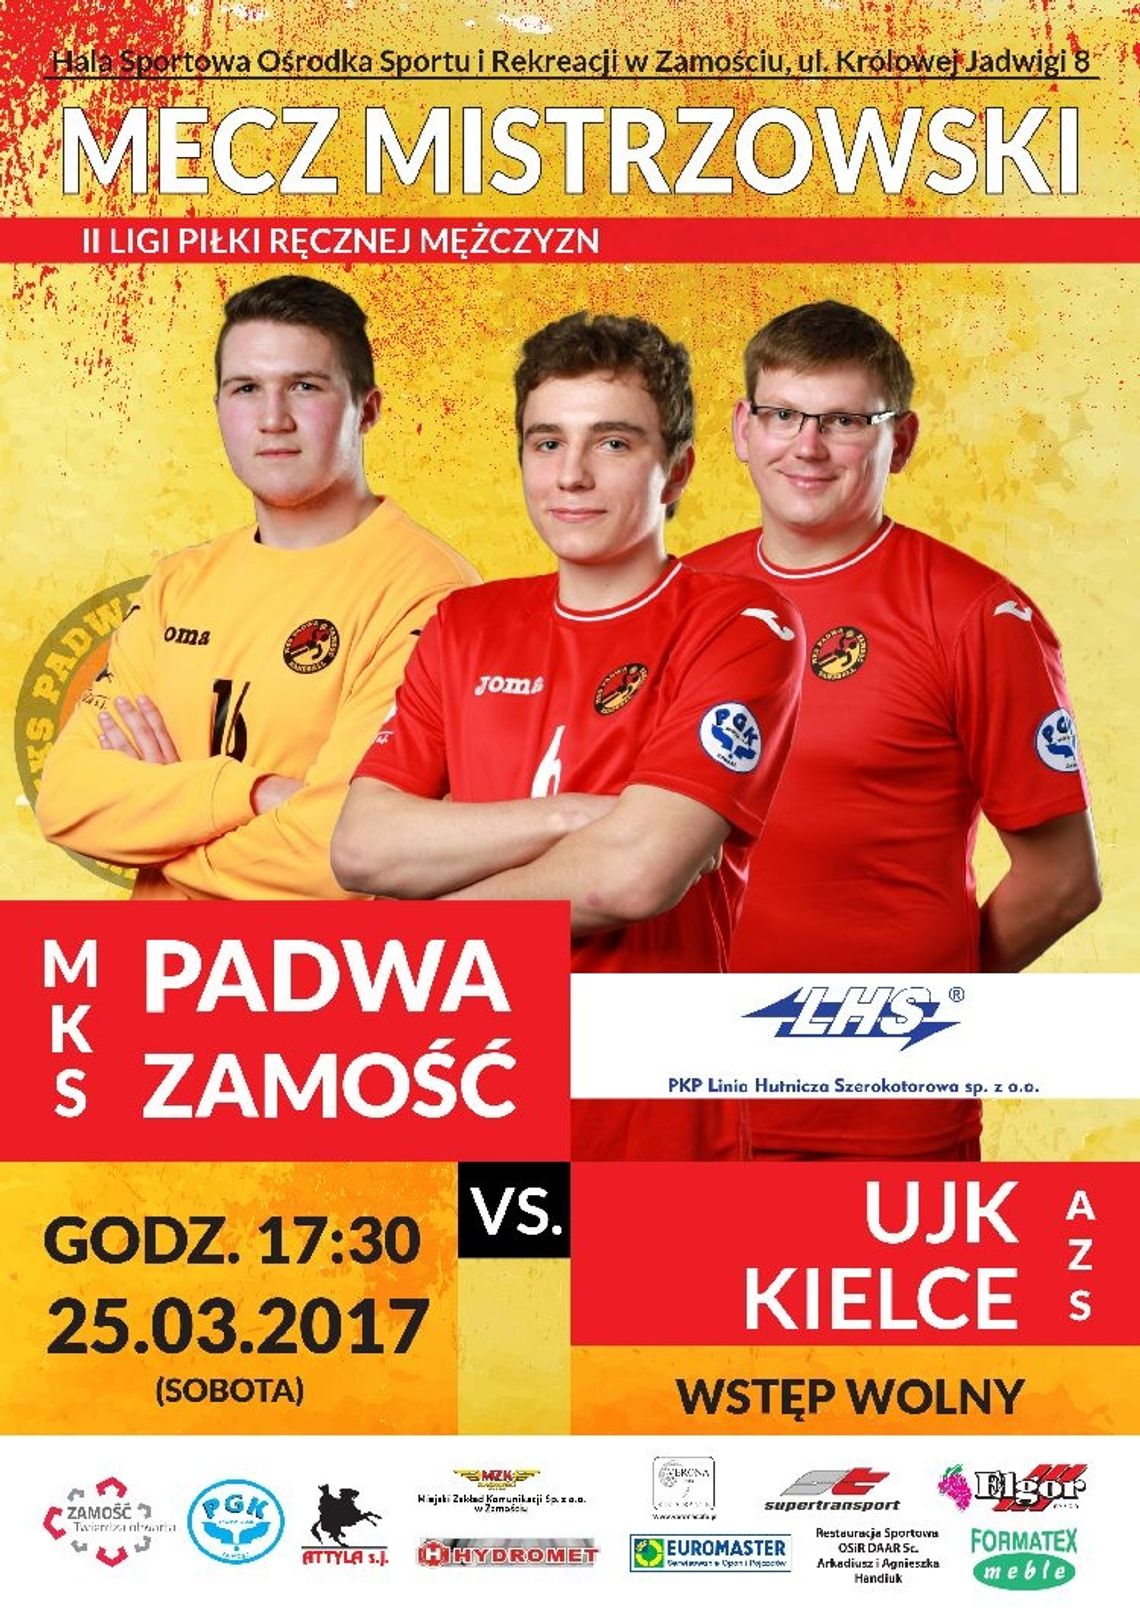 MKS Padwa Zamość - KU AZS UJK Kielce